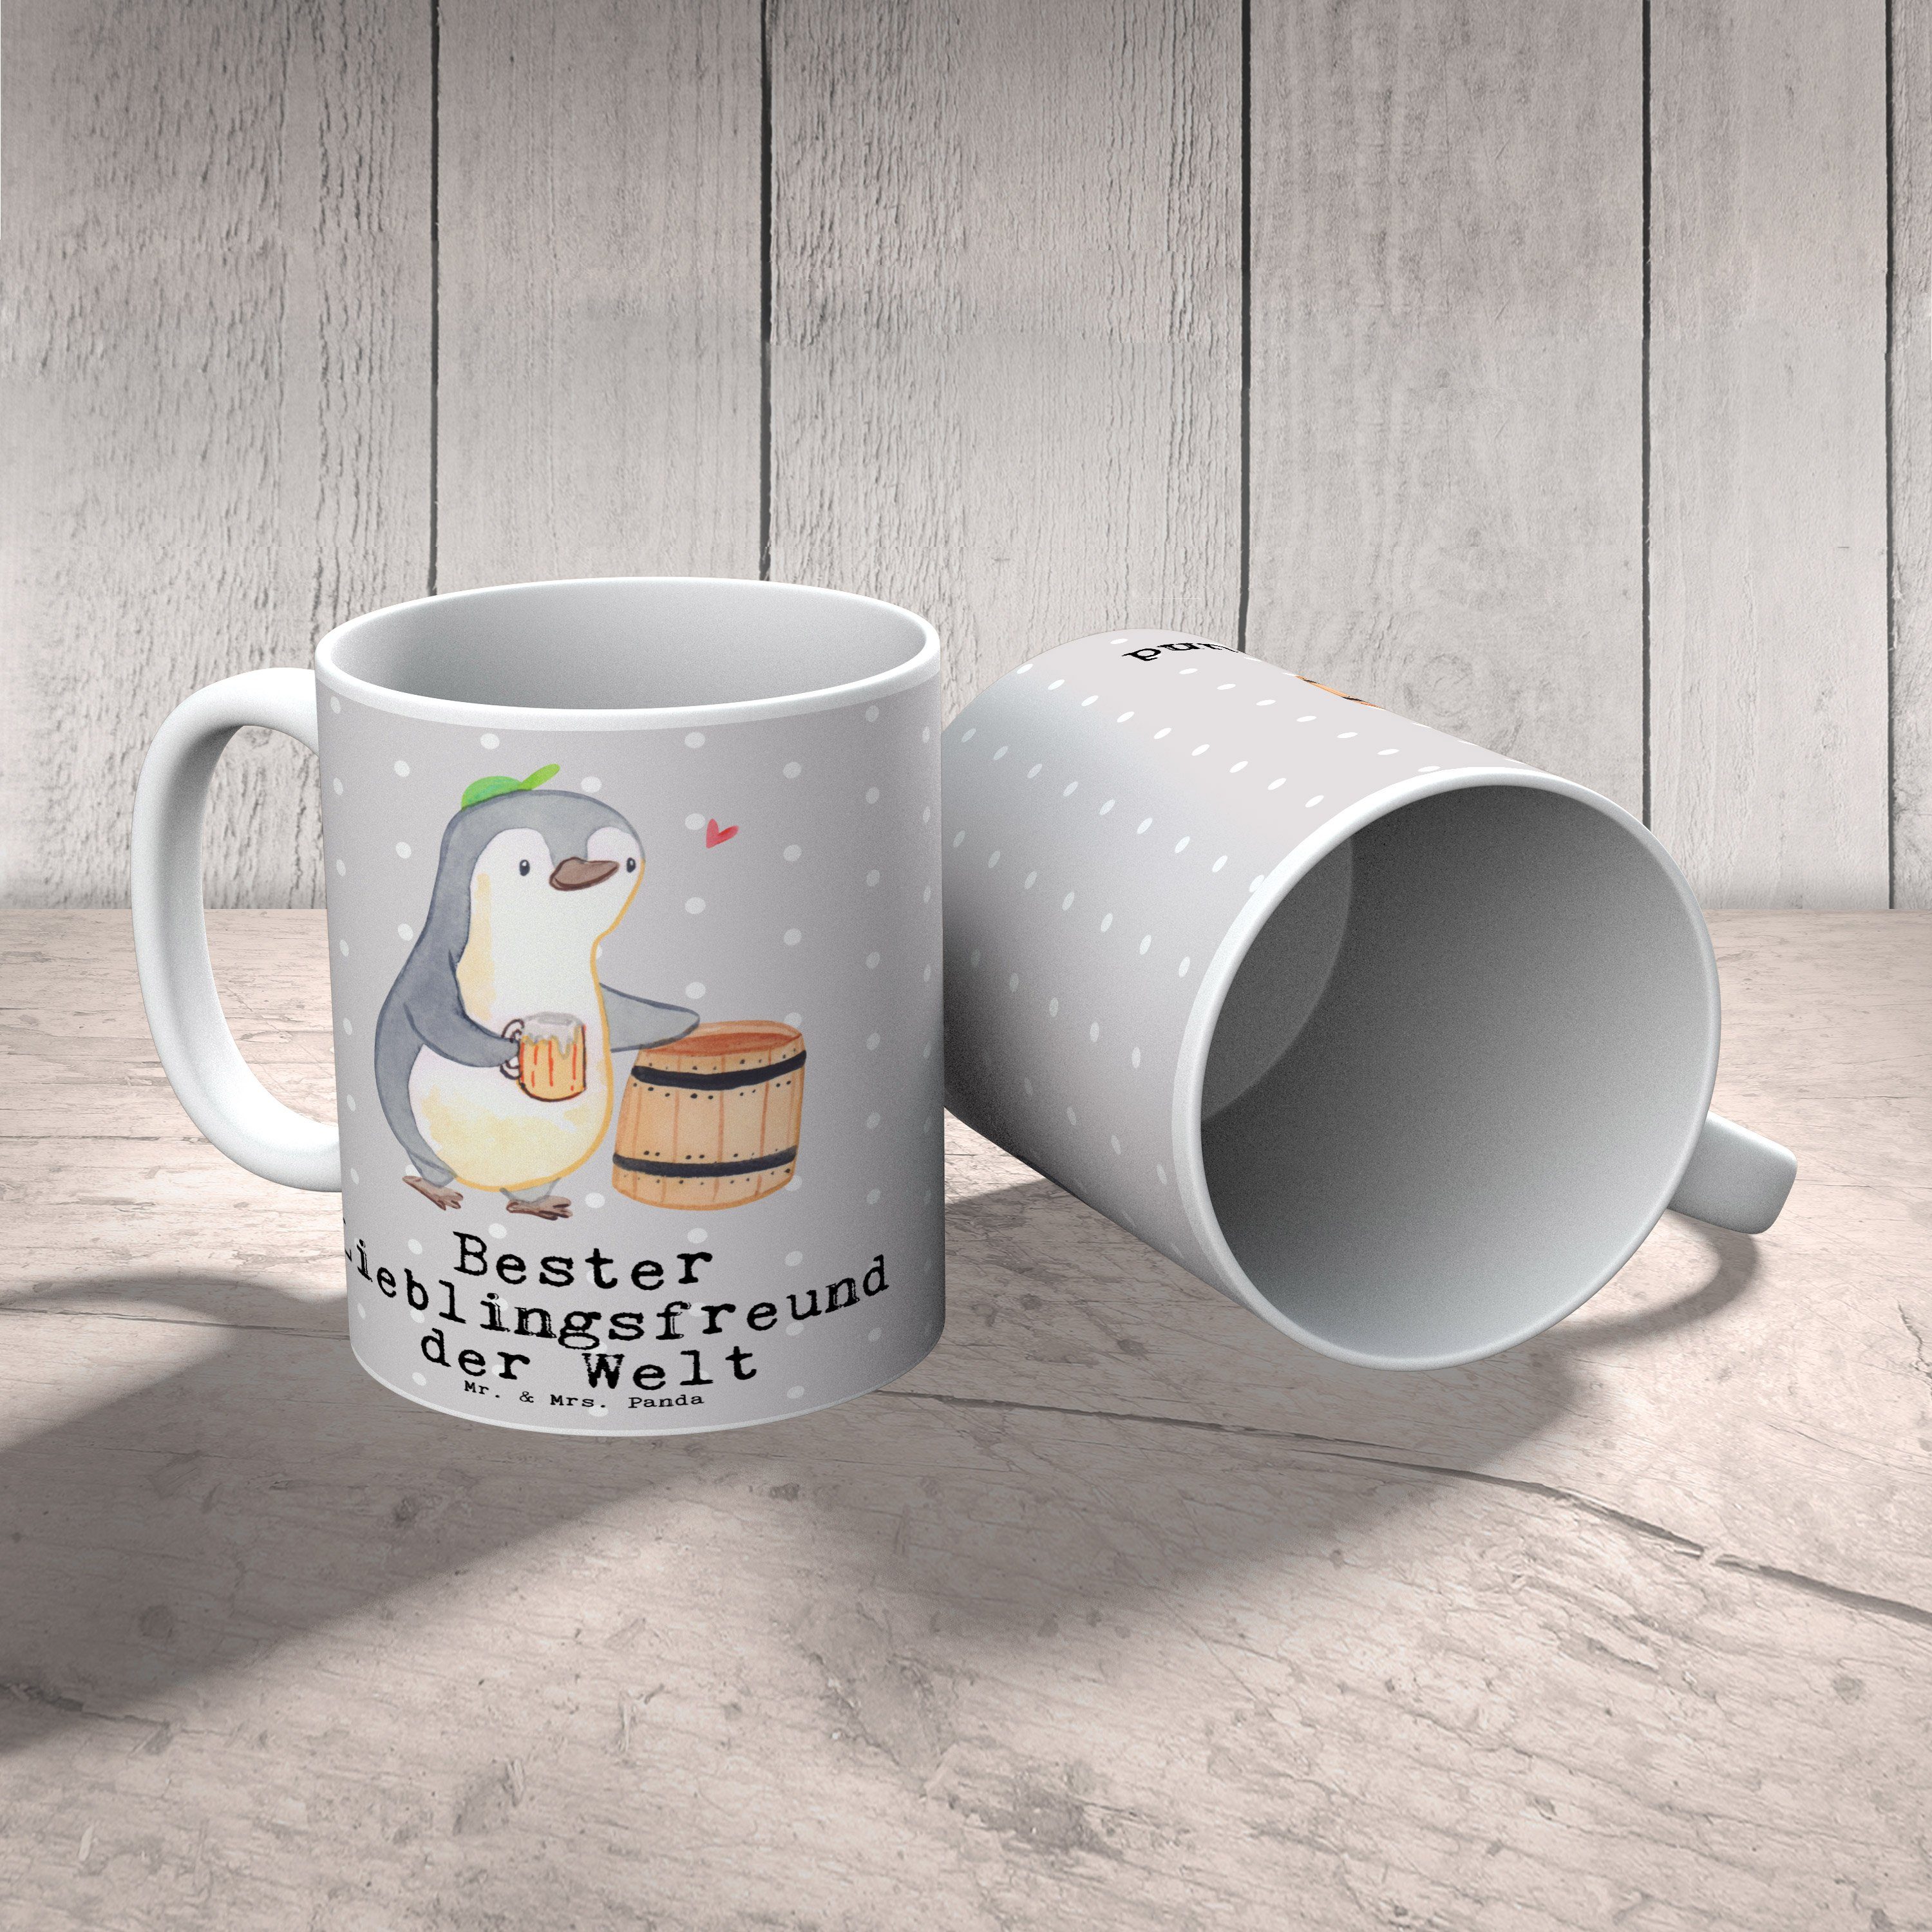 der & Grau Mrs. - - Mr. Ge, Welt Tasse Pinguin Panda Keramik Pastell Lieblingsfreund Bester Geschenk,